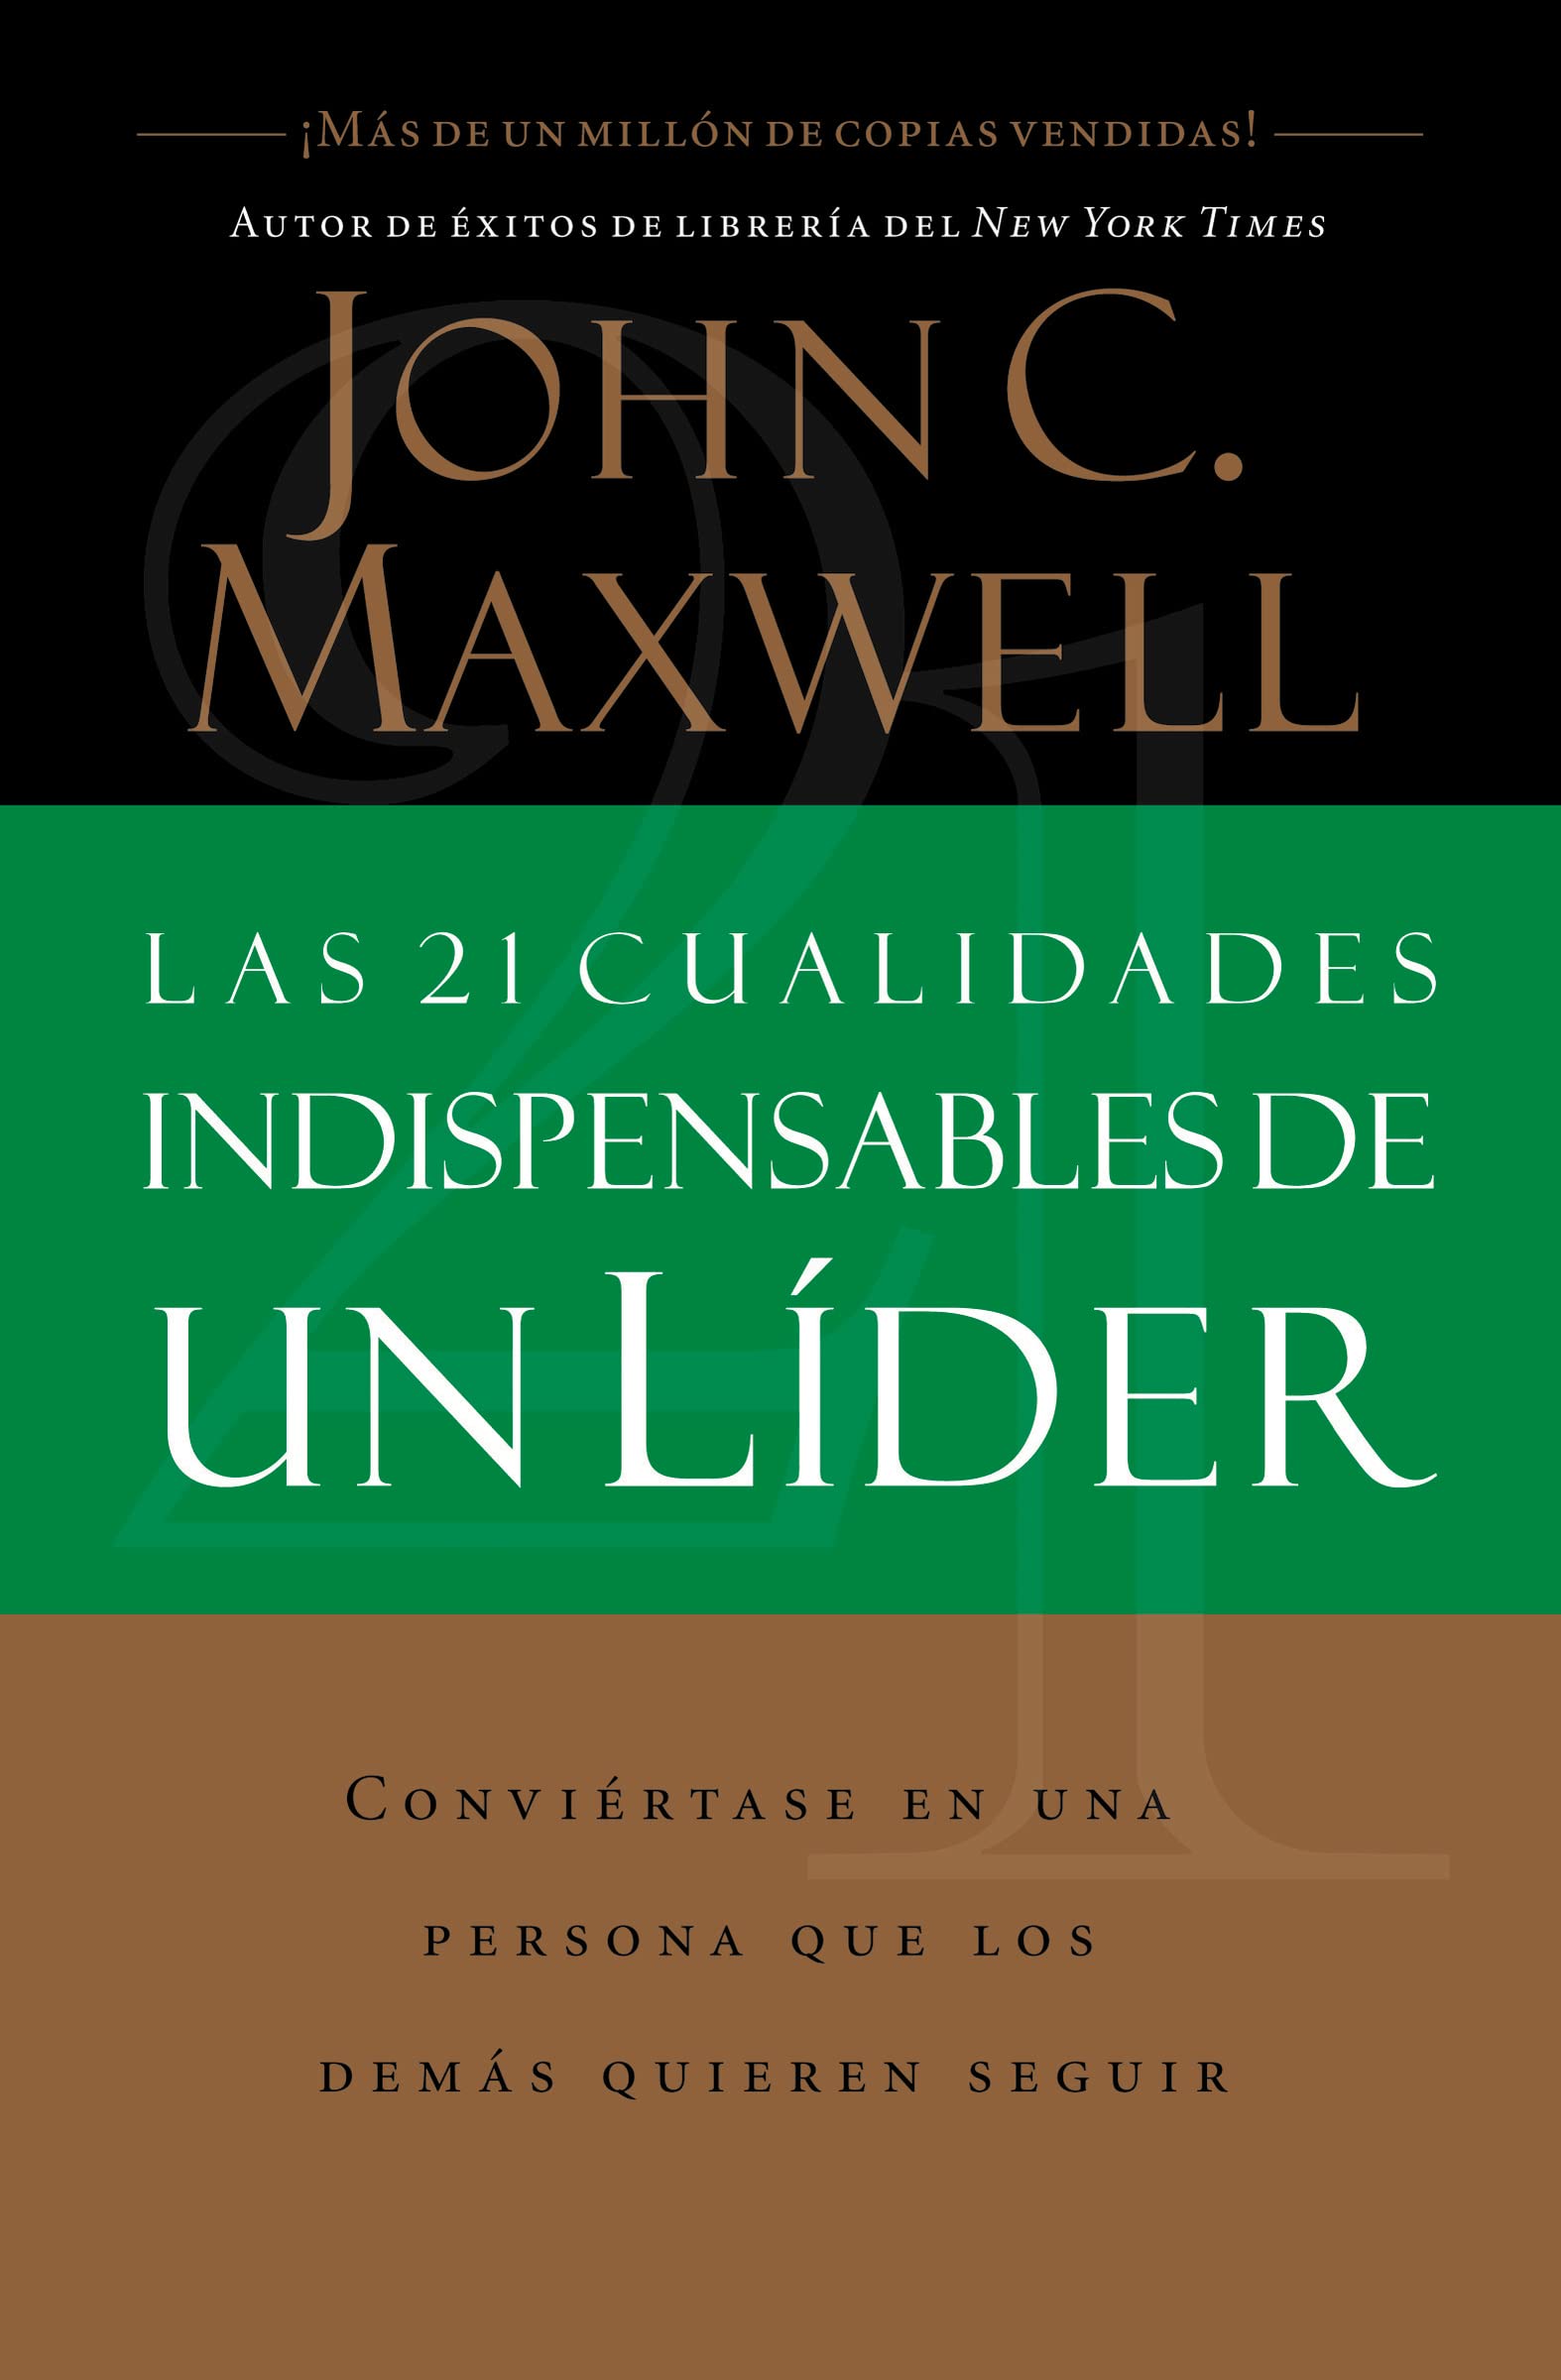 Las 21 Cualidades Indispensables De Un Líder (Spanish Edition)